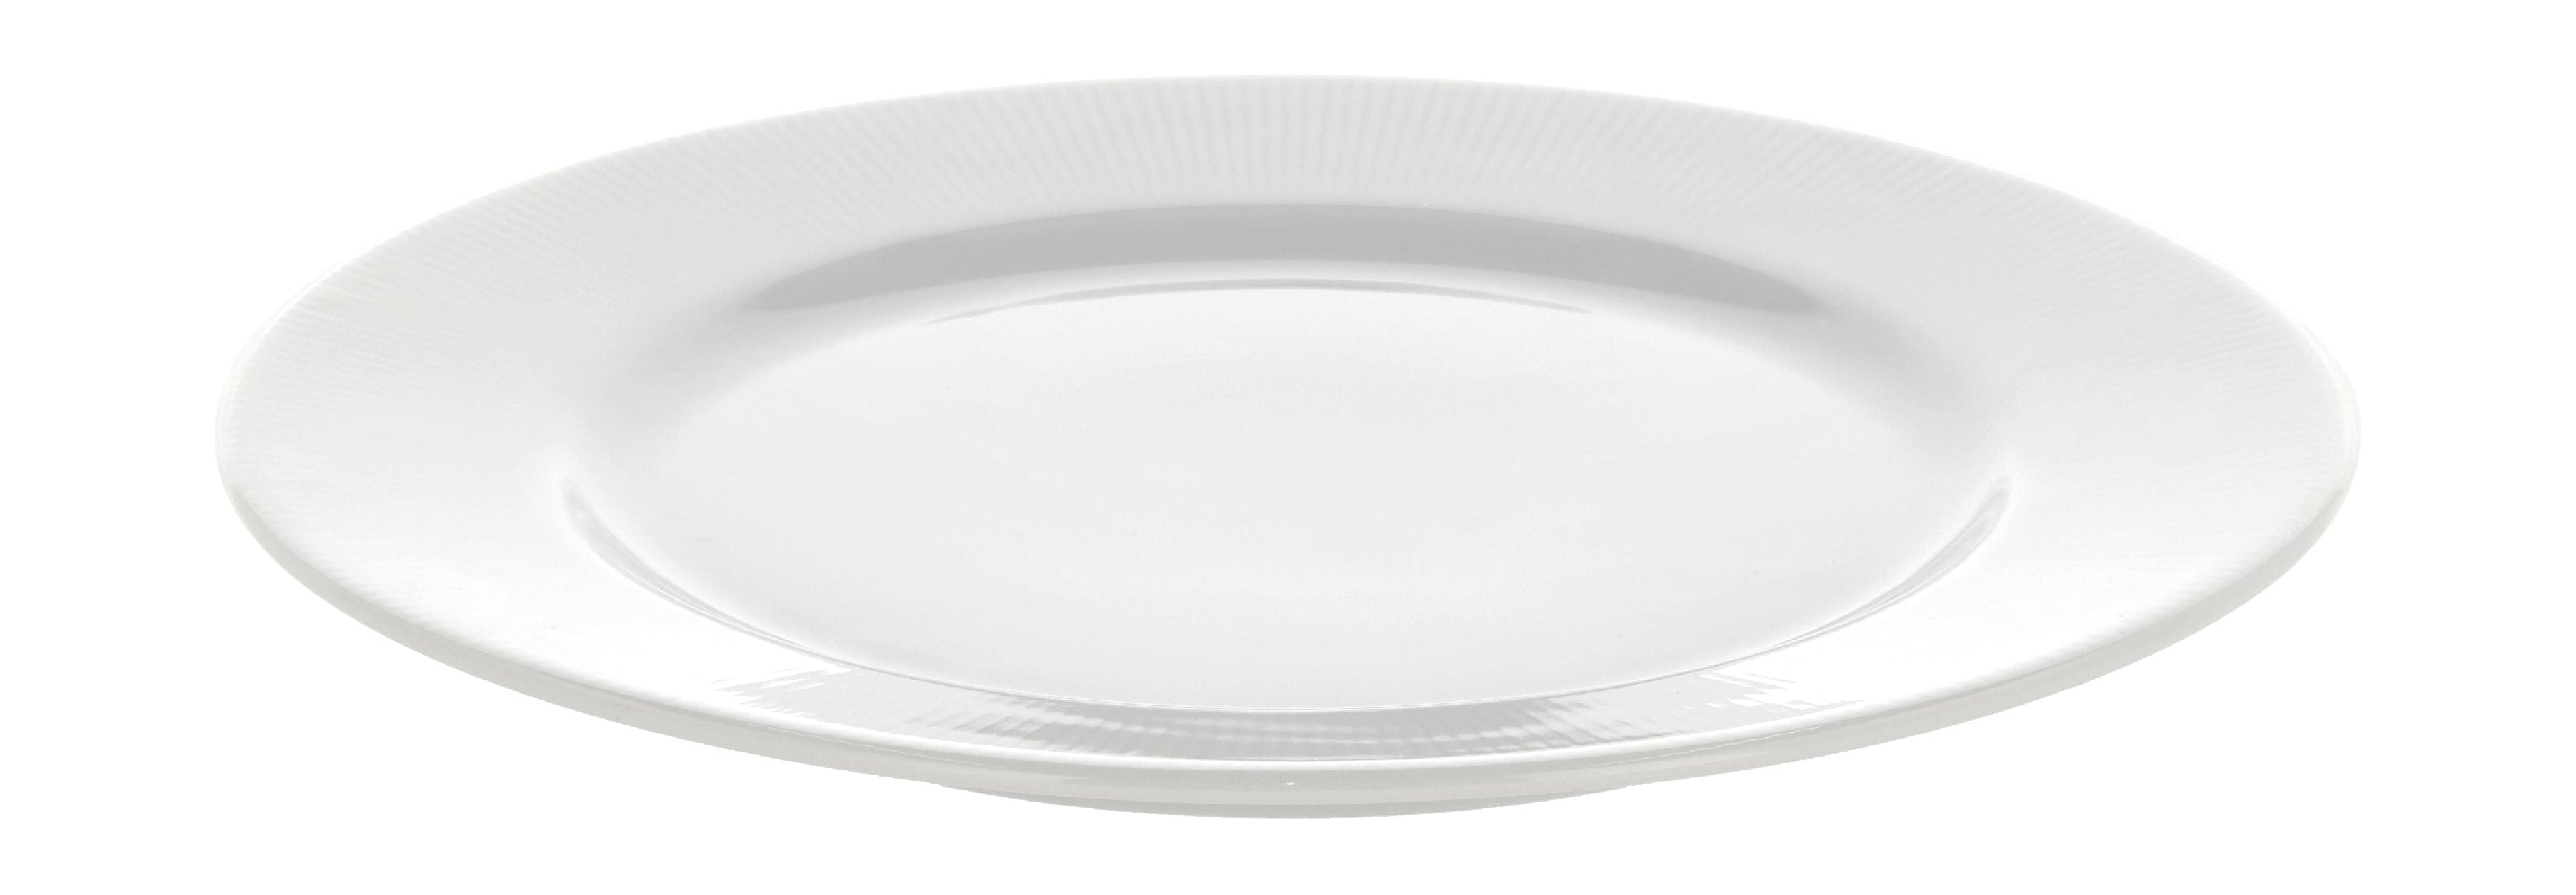 Piatto piatto di eventuali di eventuali di pilasio con cerchio Ø22 cm, bianco